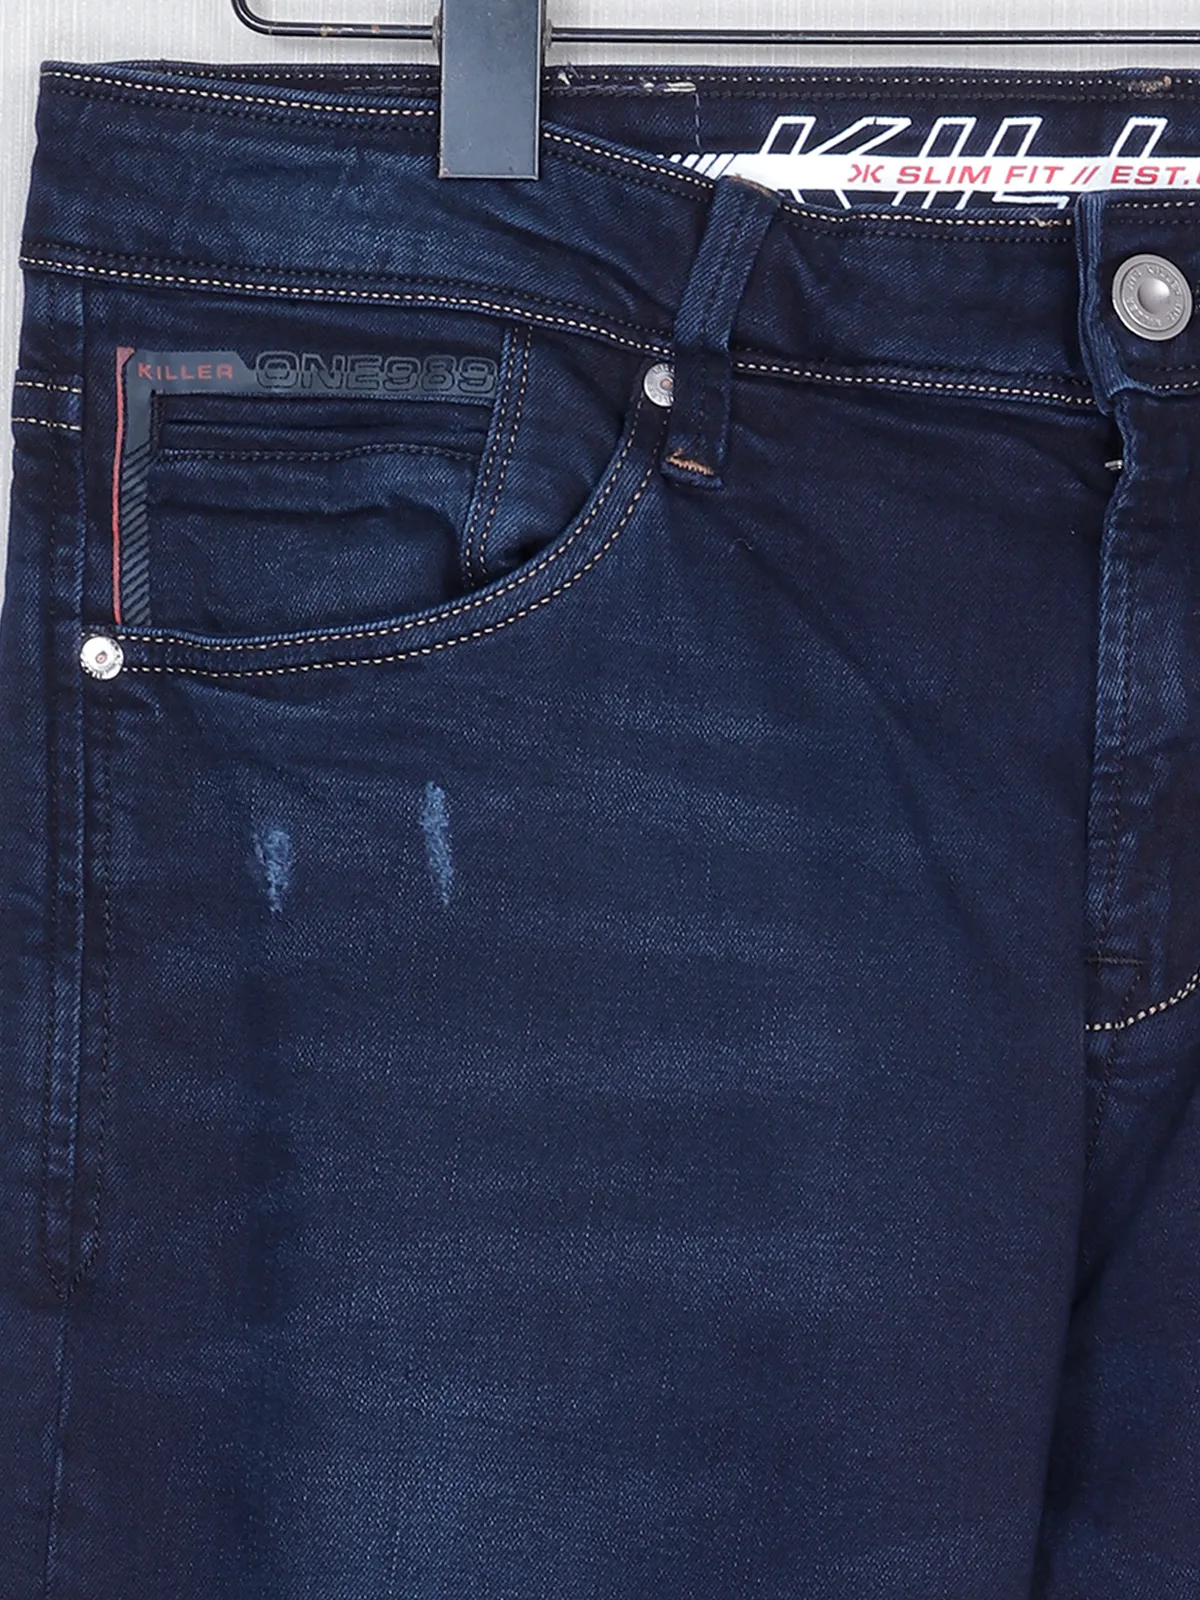 Killer navy casual washed slim fit denim jeans